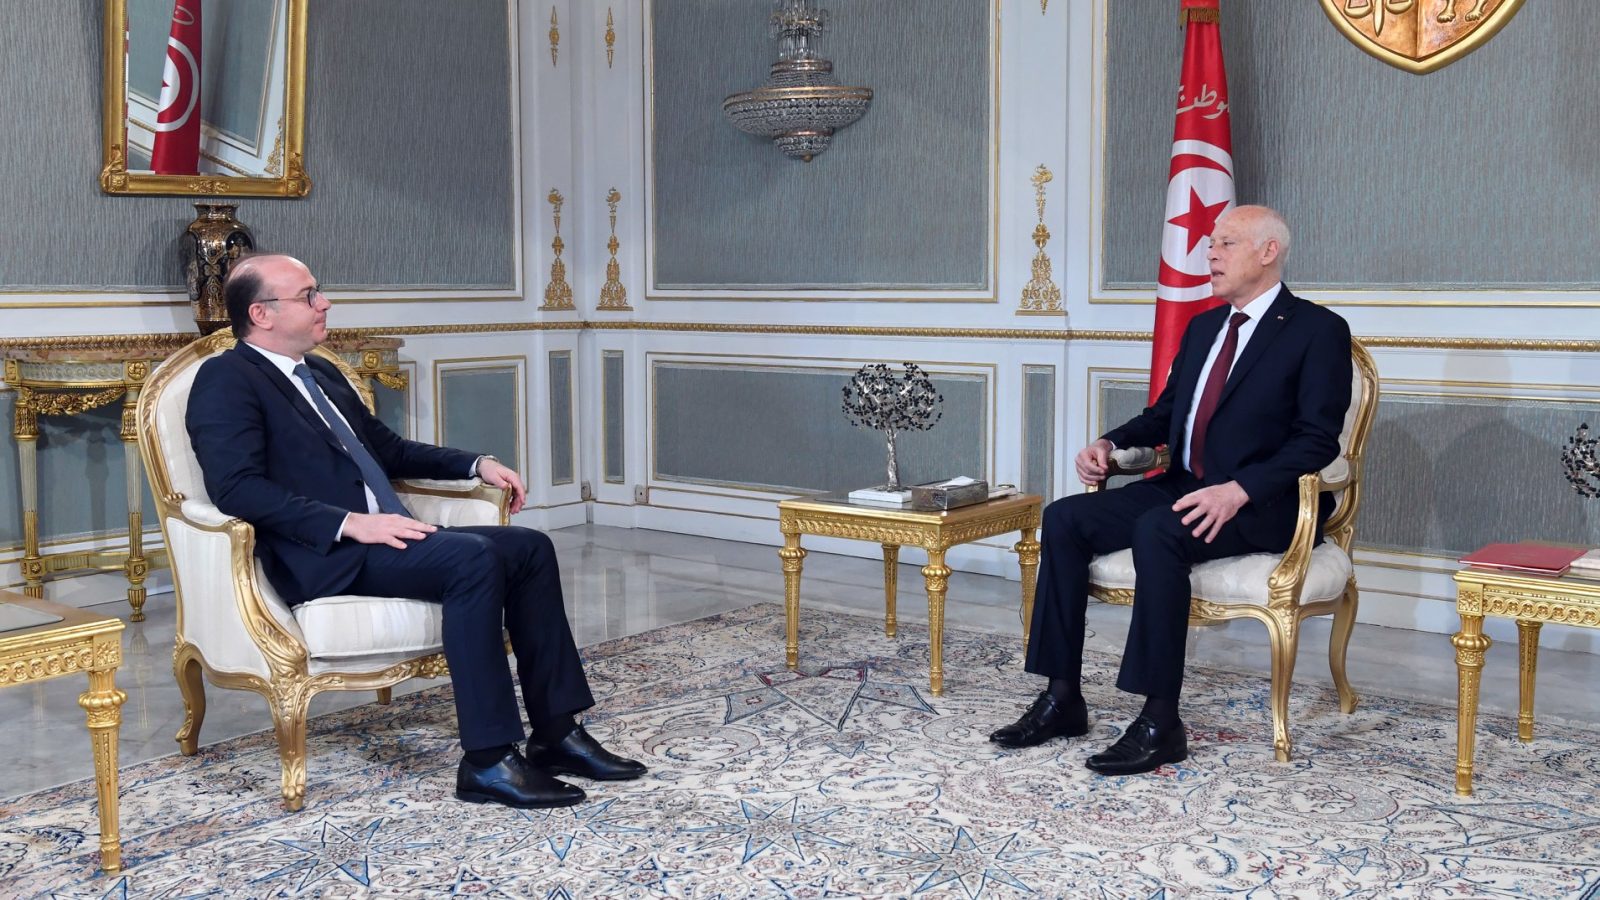 بحث علاقات تونس الدولية في ظل جائحة كورونا